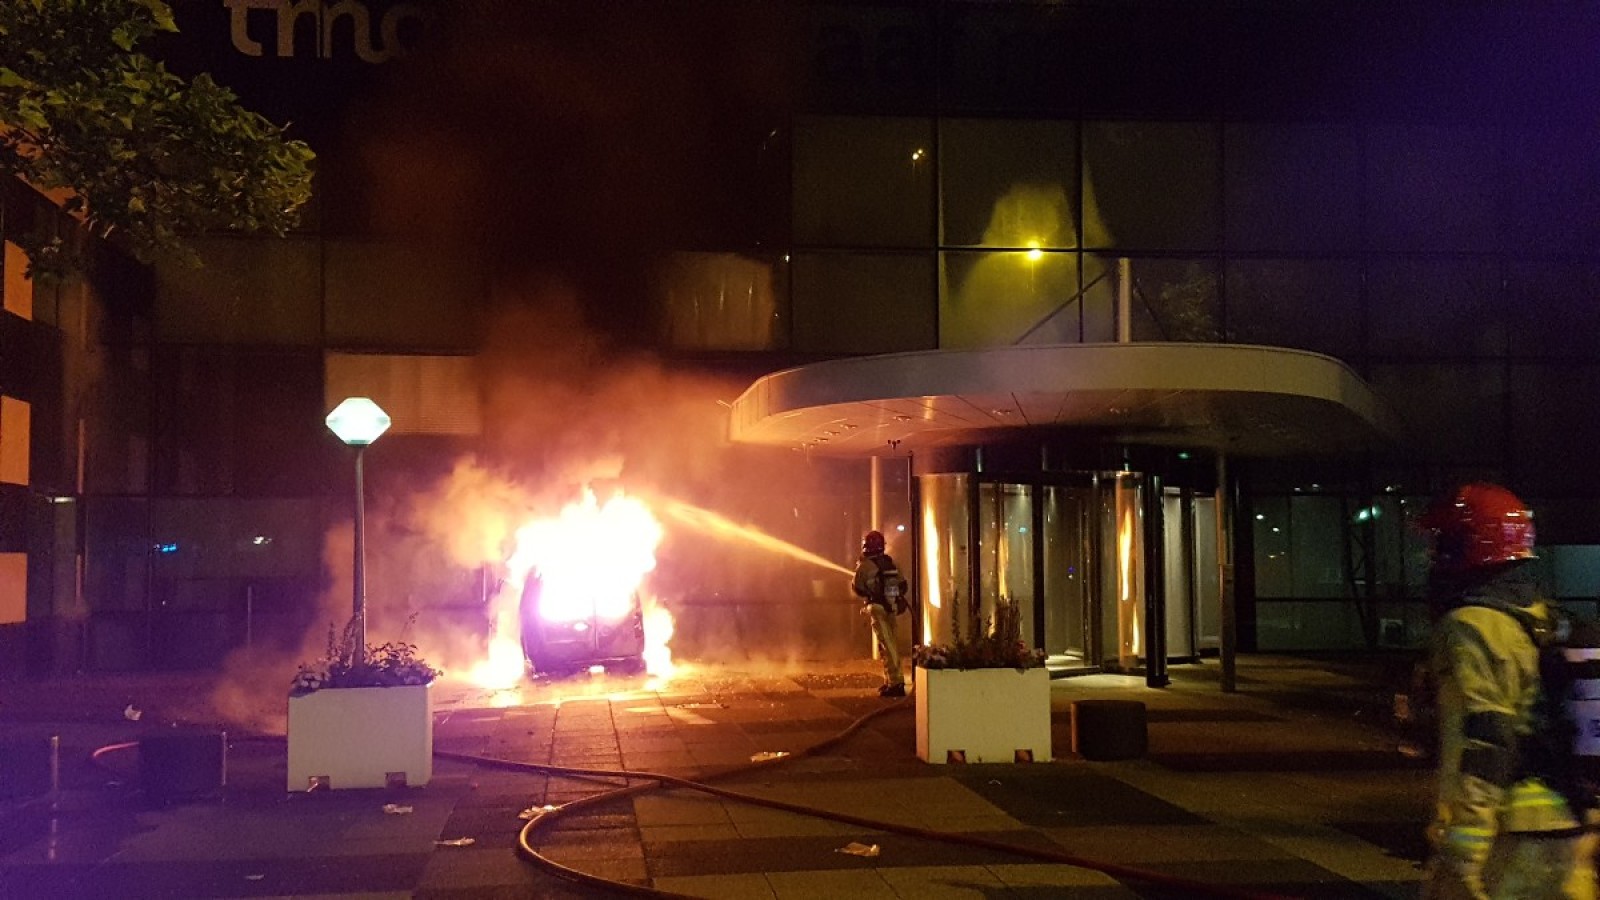 Busje rijdt kantoorpand De Telegraaf binnen en vliegt in brand